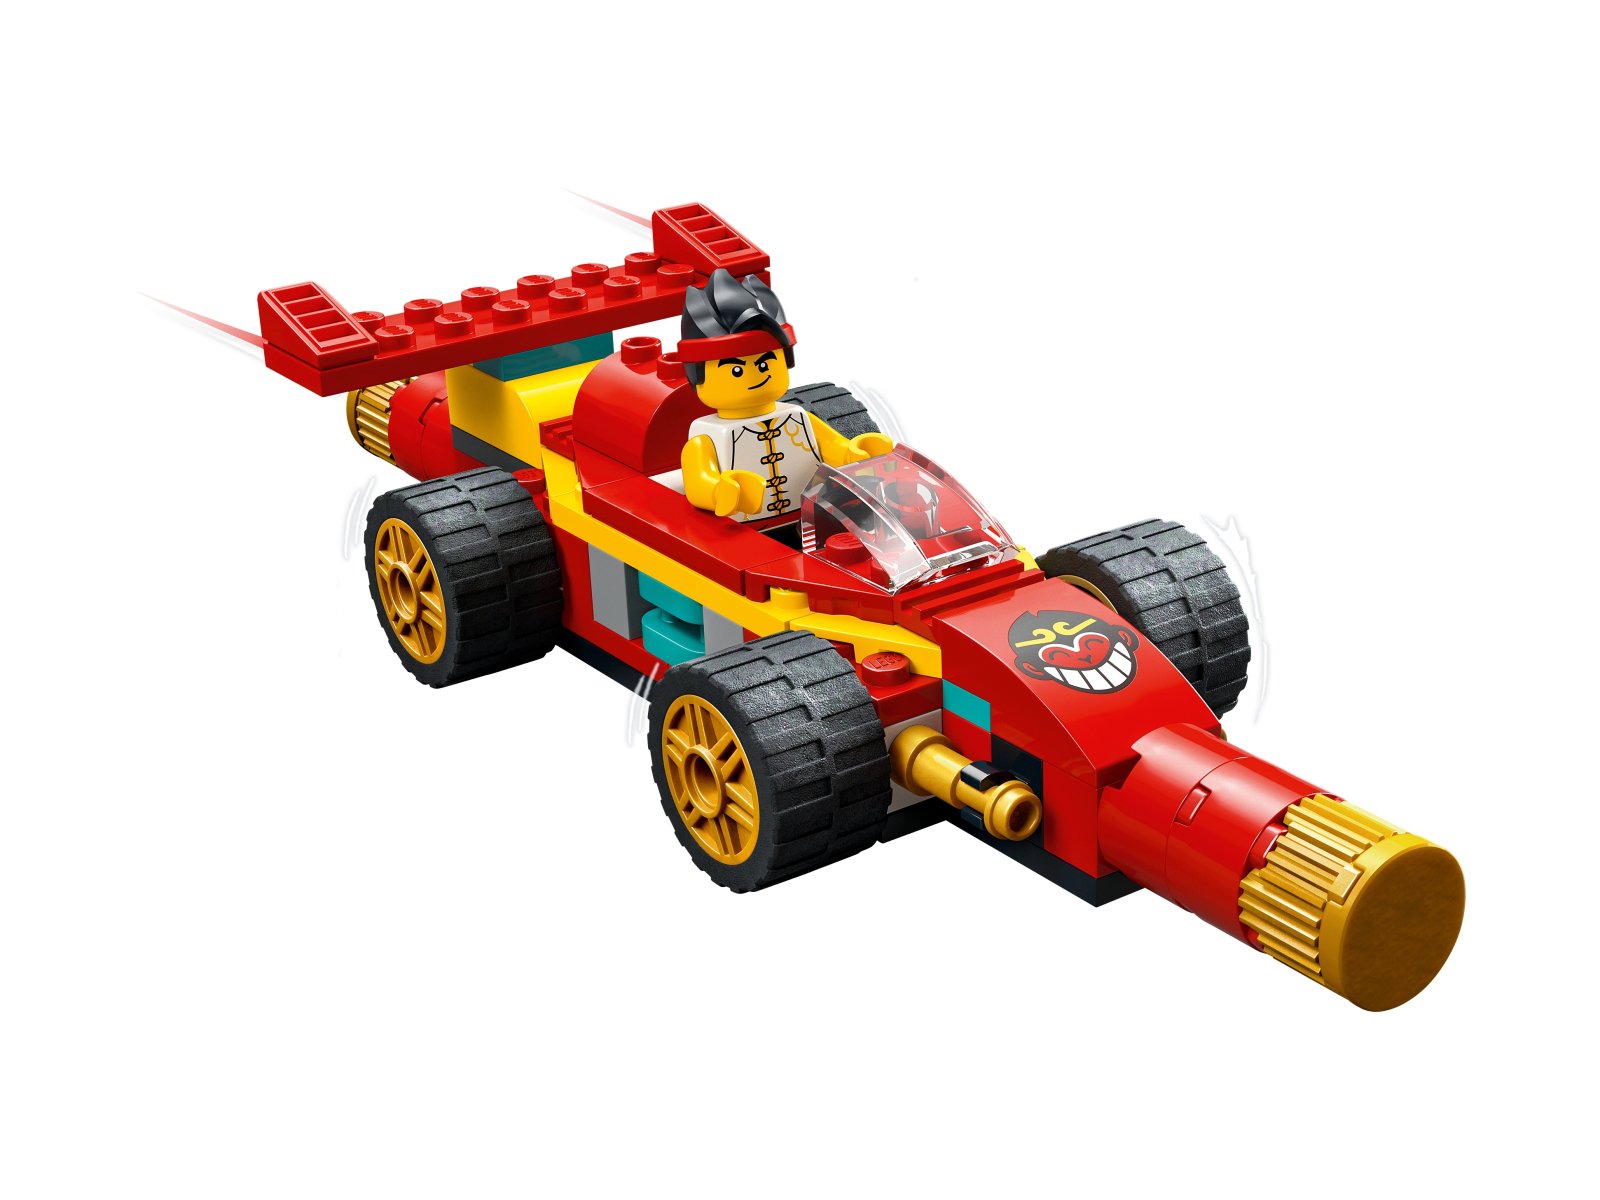 LEGO Monkie Kid Modele z kosturem Monkie Kida 80030